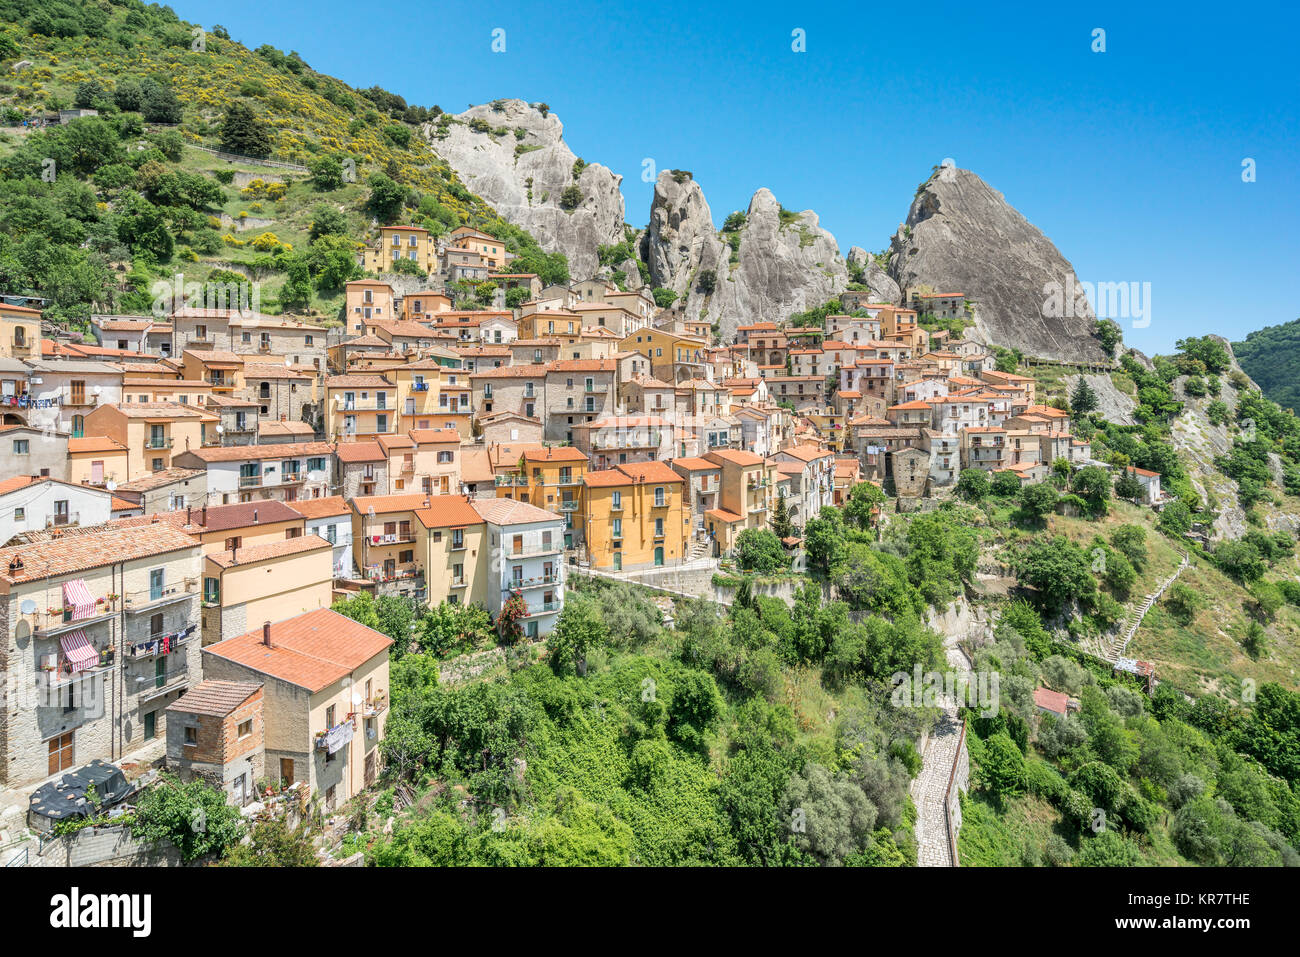 Vue panoramique de Castelmezzano, province de Potenza, dans la région Basilicate, en Italie méridionale. Banque D'Images